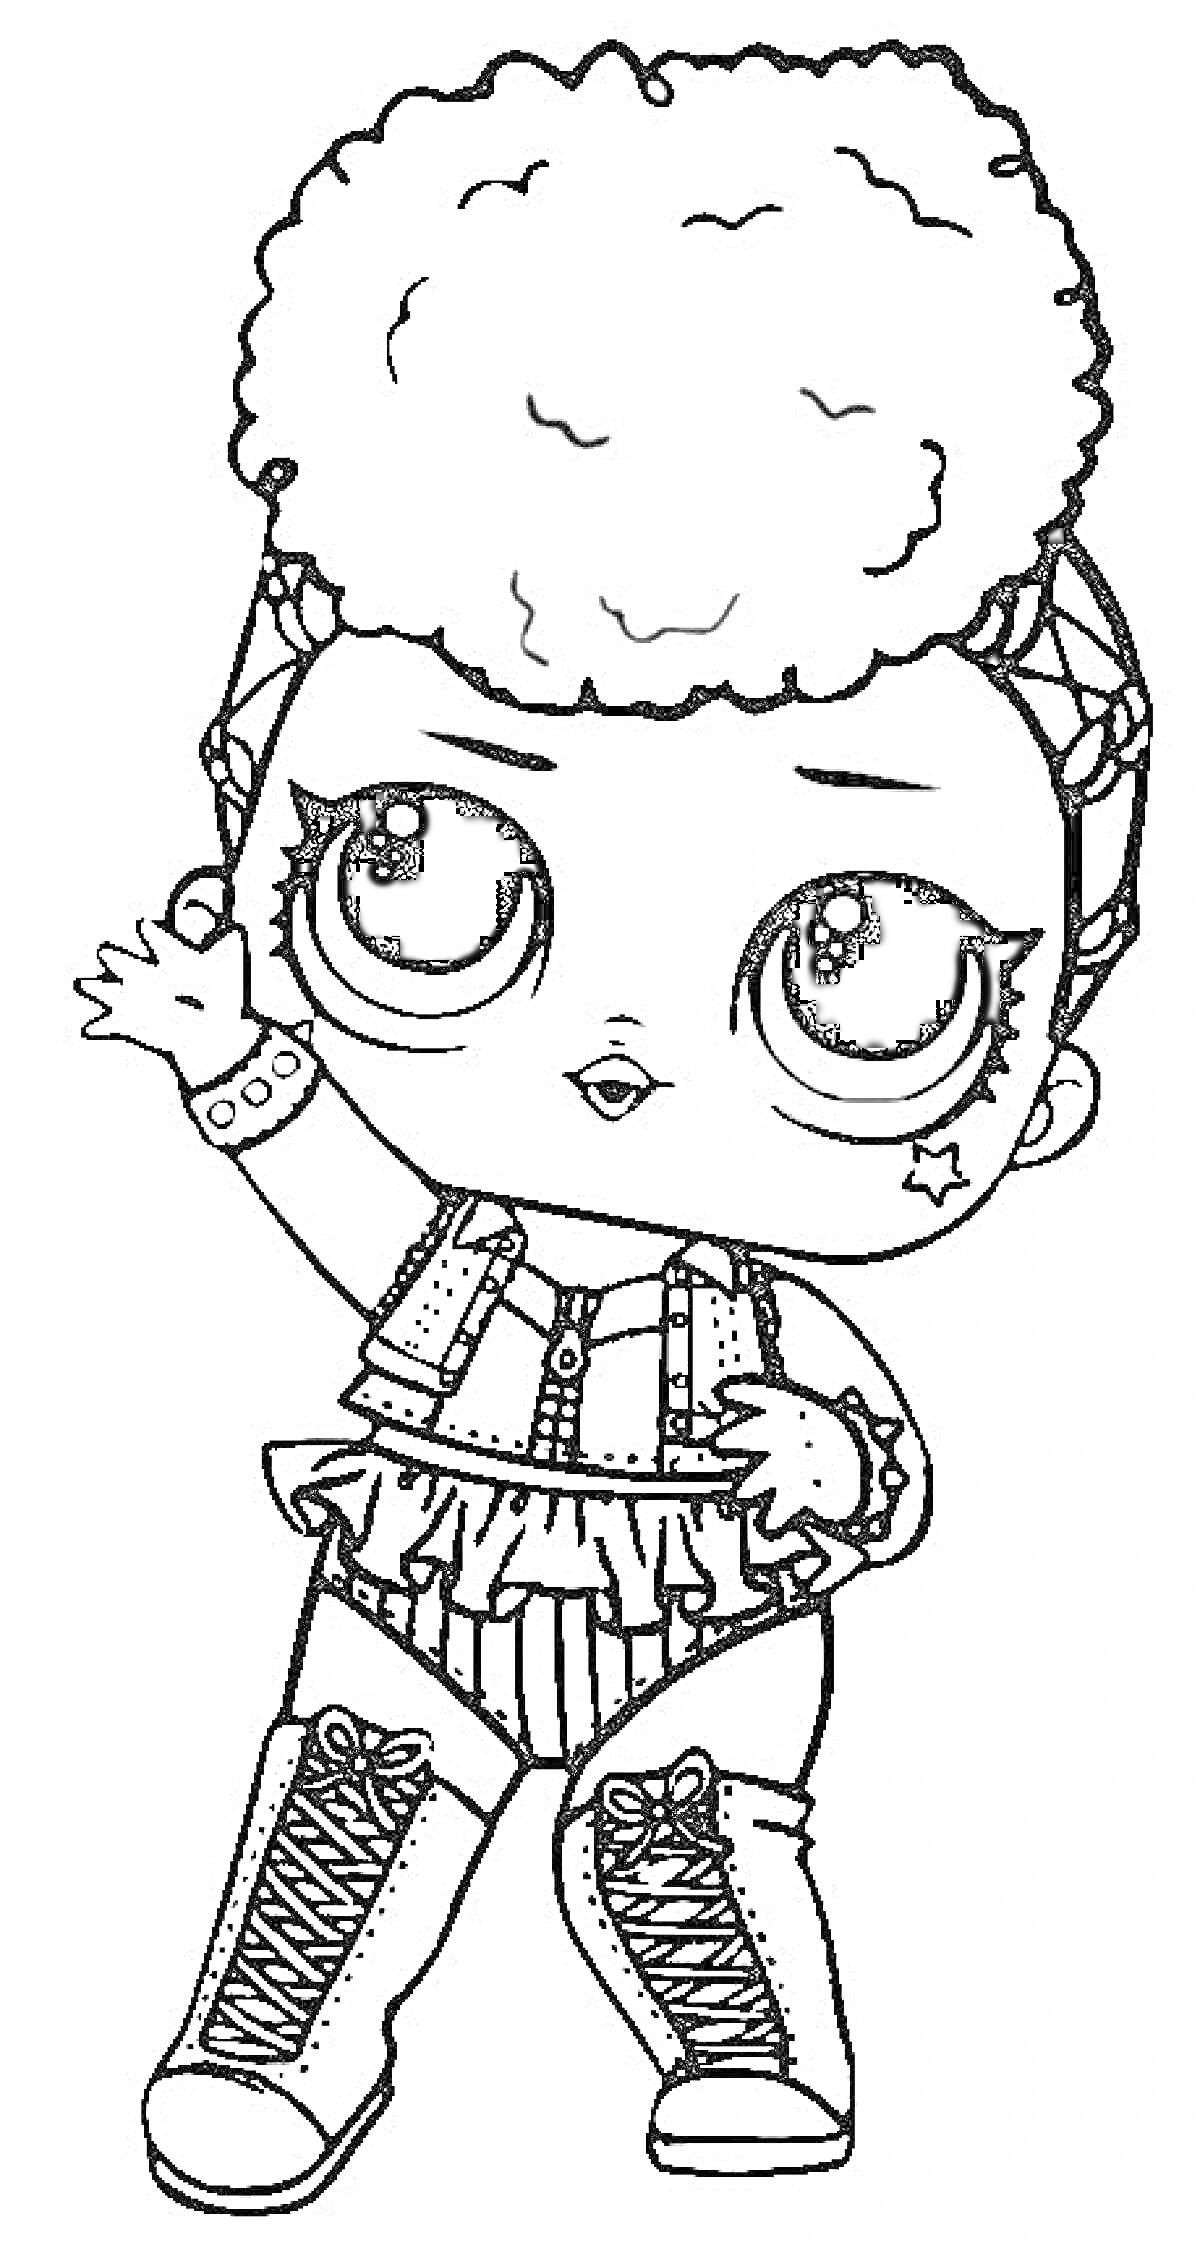 Раскраска Кукла Лол с объемными волосами, в жилетке с бахромой, высоких ботинках и браслетом, с бантом на голове, звездочкой на щеке и поднятой рукой